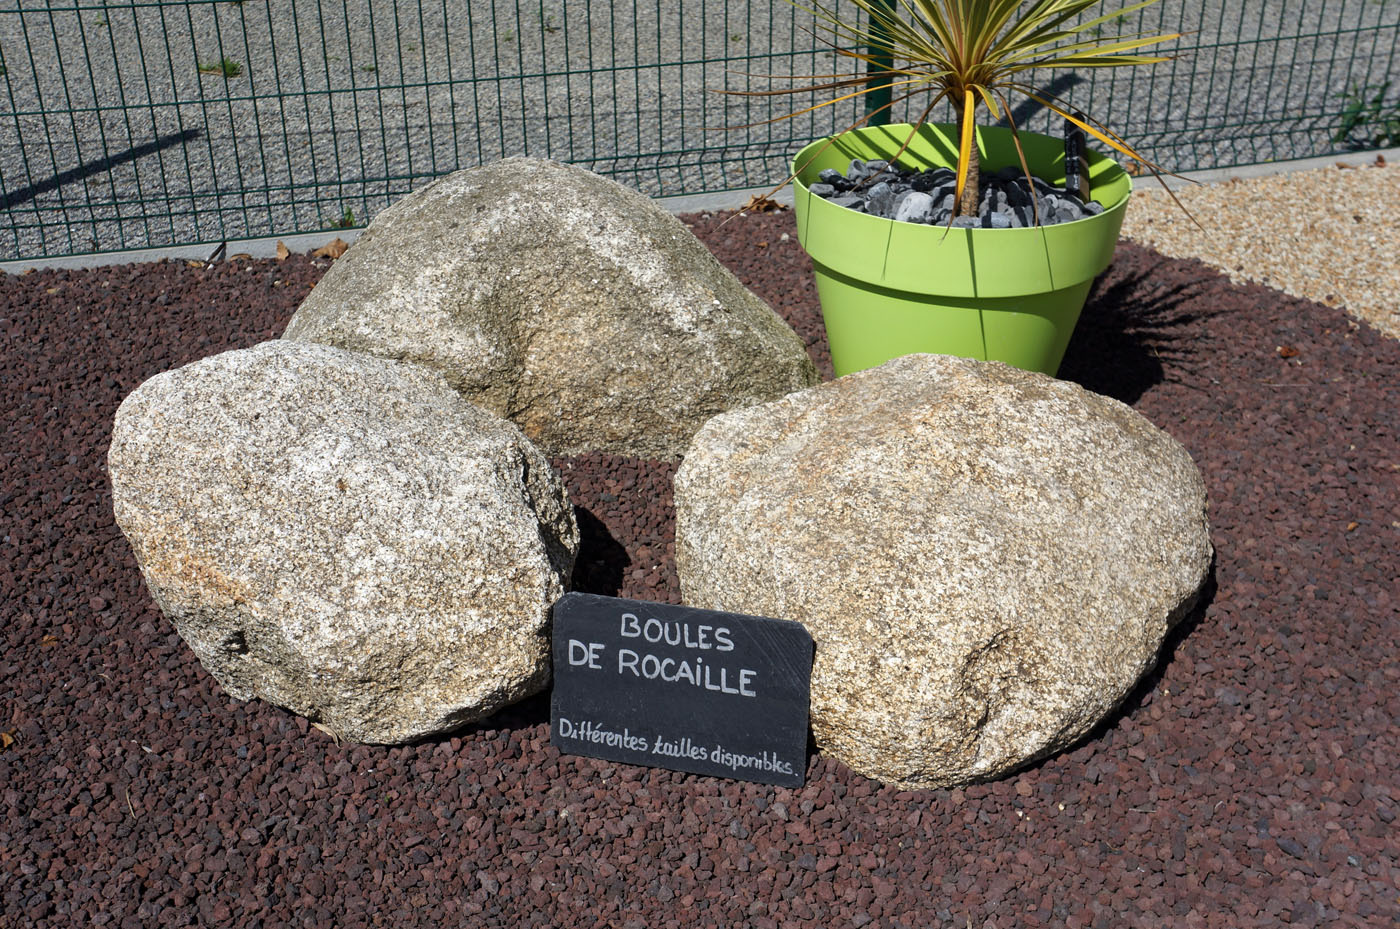 Boules de rocaille (1).jpg